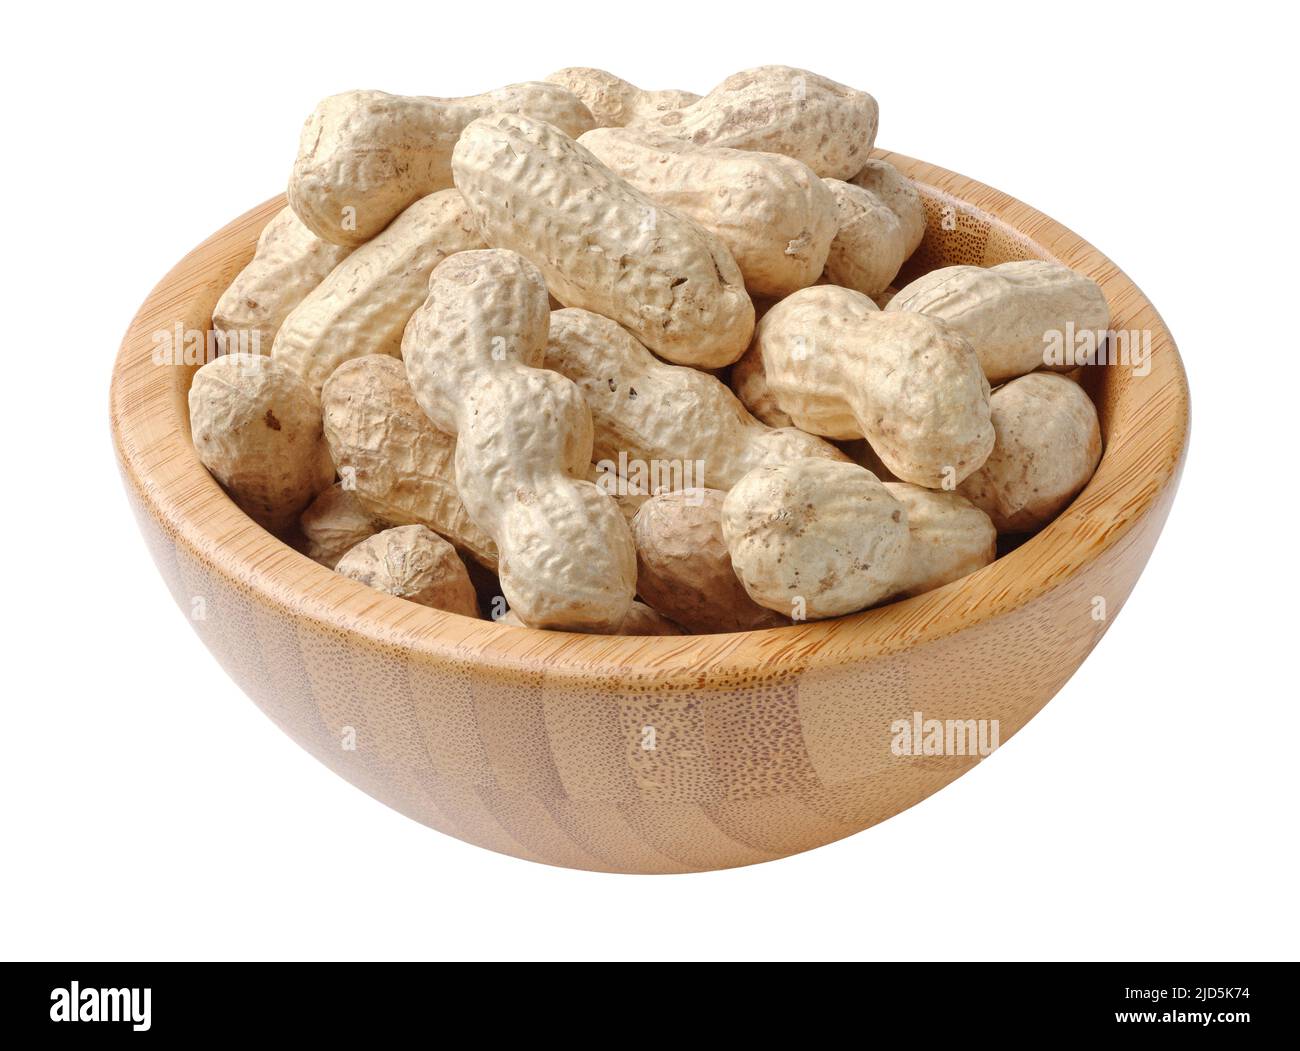 Montón de cacahuetes sin cáscara en un tazón de madera redondo, aislado sobre fondo blanco Foto de stock